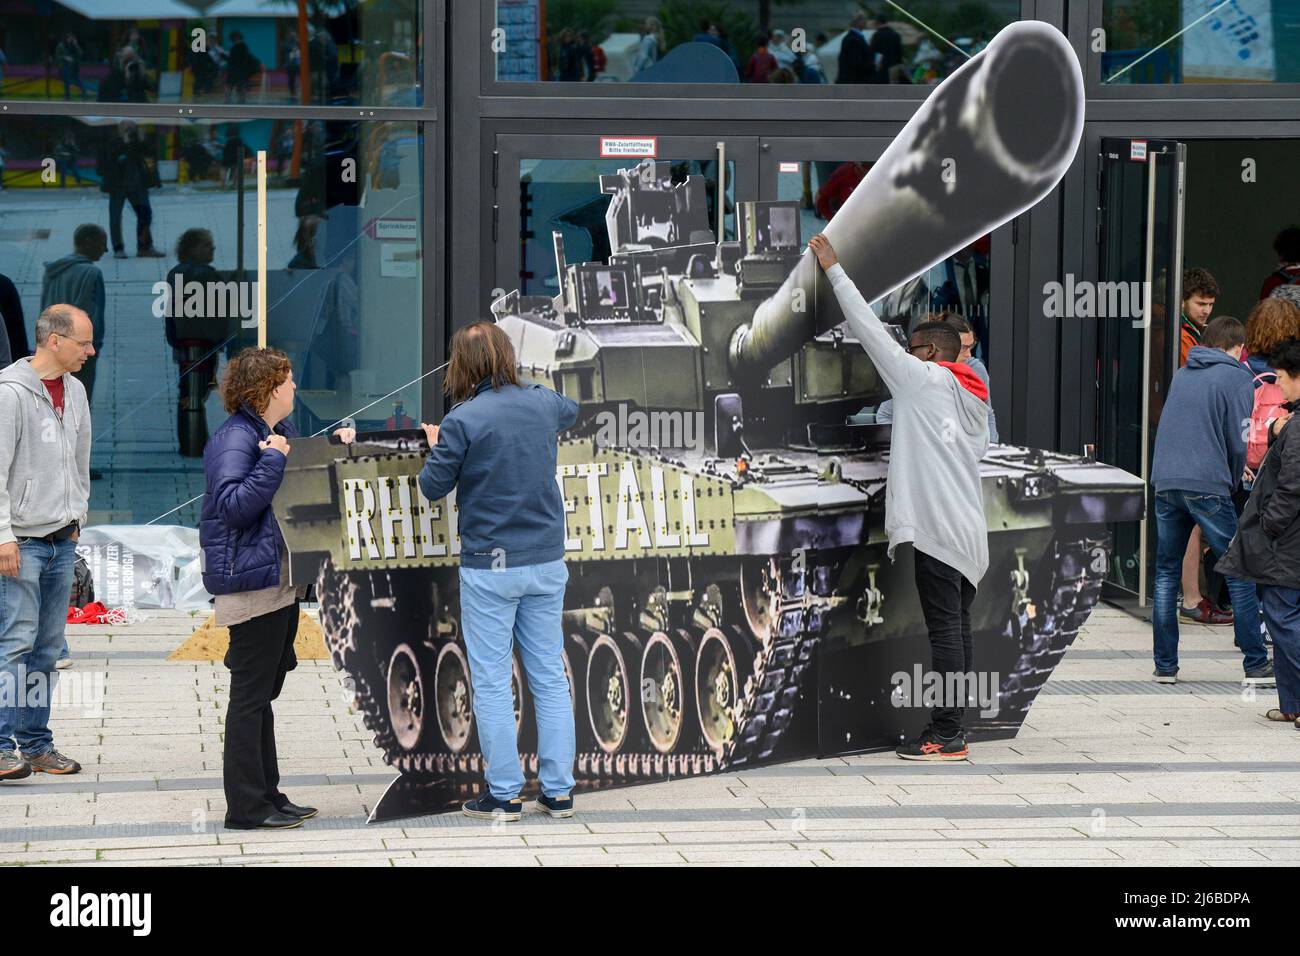 Alemania, Berlín, protesta de la ONG Campact contra el comercio de armas, modelo de globo de la empresa alemana de denfense Rheinmetall Leopard 2 tanque de batalla Foto de stock